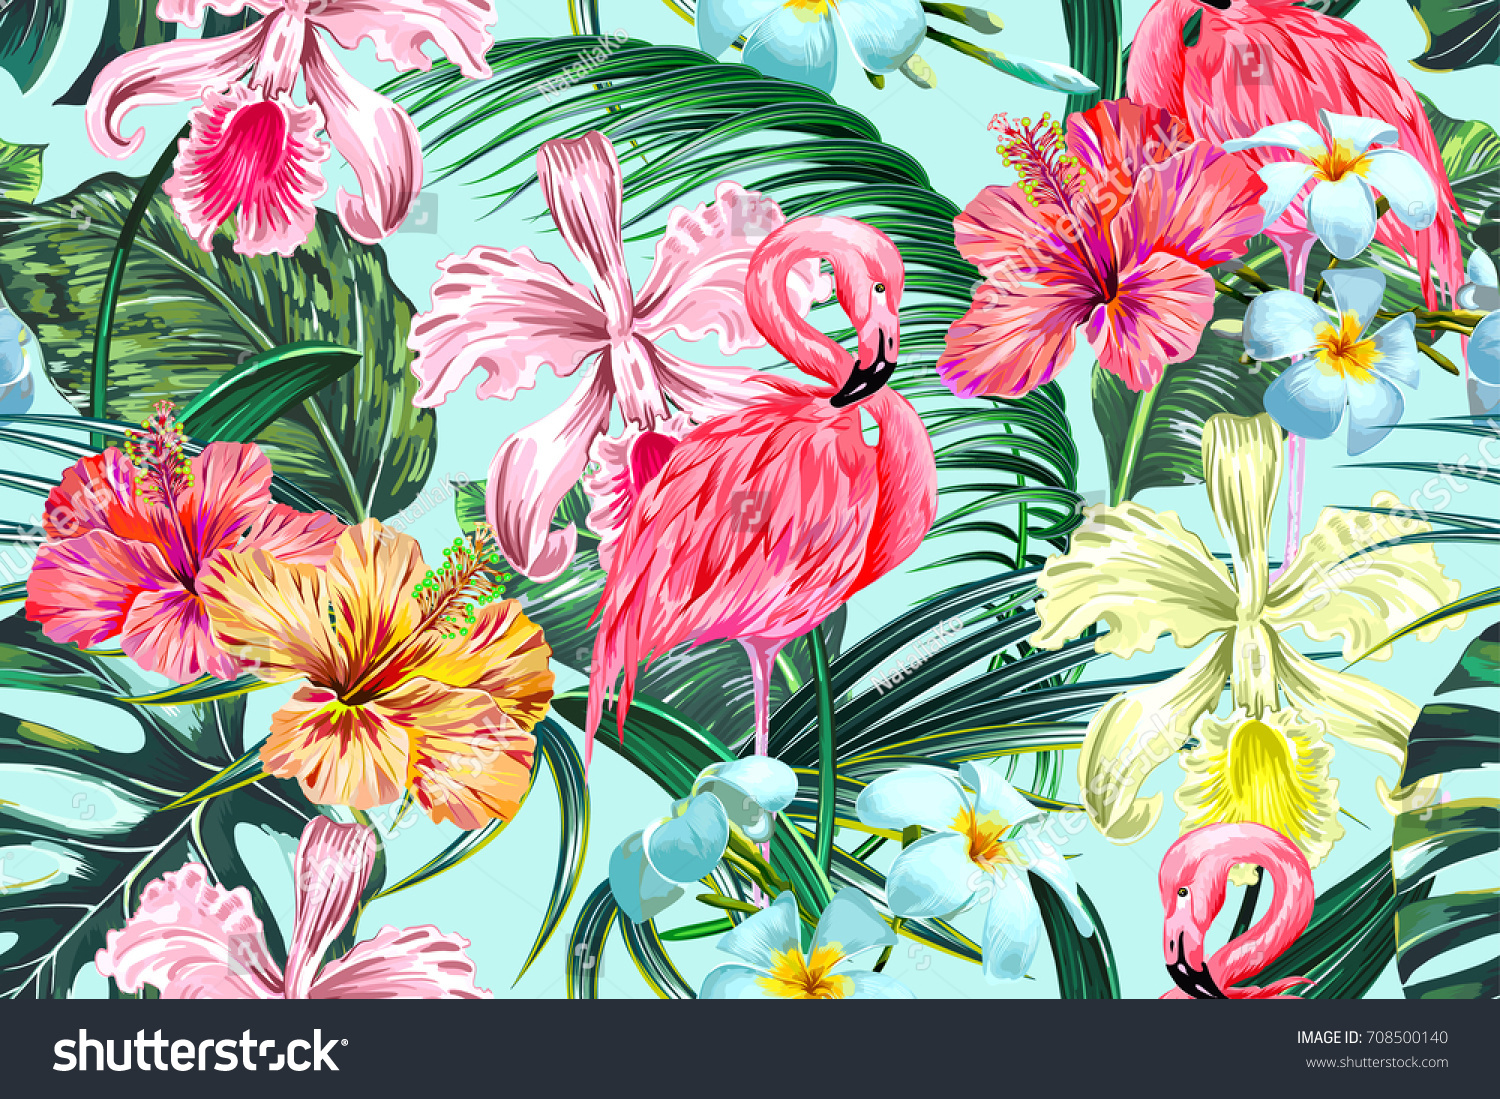 エキゾチックな花 ヤシの葉 ジャングルの葉 ハイビスカス ランの花 ピンクのフラミンゴスを持つ花柄のシームレスなベクター画像熱帯のパターン背景 ボタニカル壁紙 ハワイ風のイラトス のベクター画像素材 ロイヤリティフリー